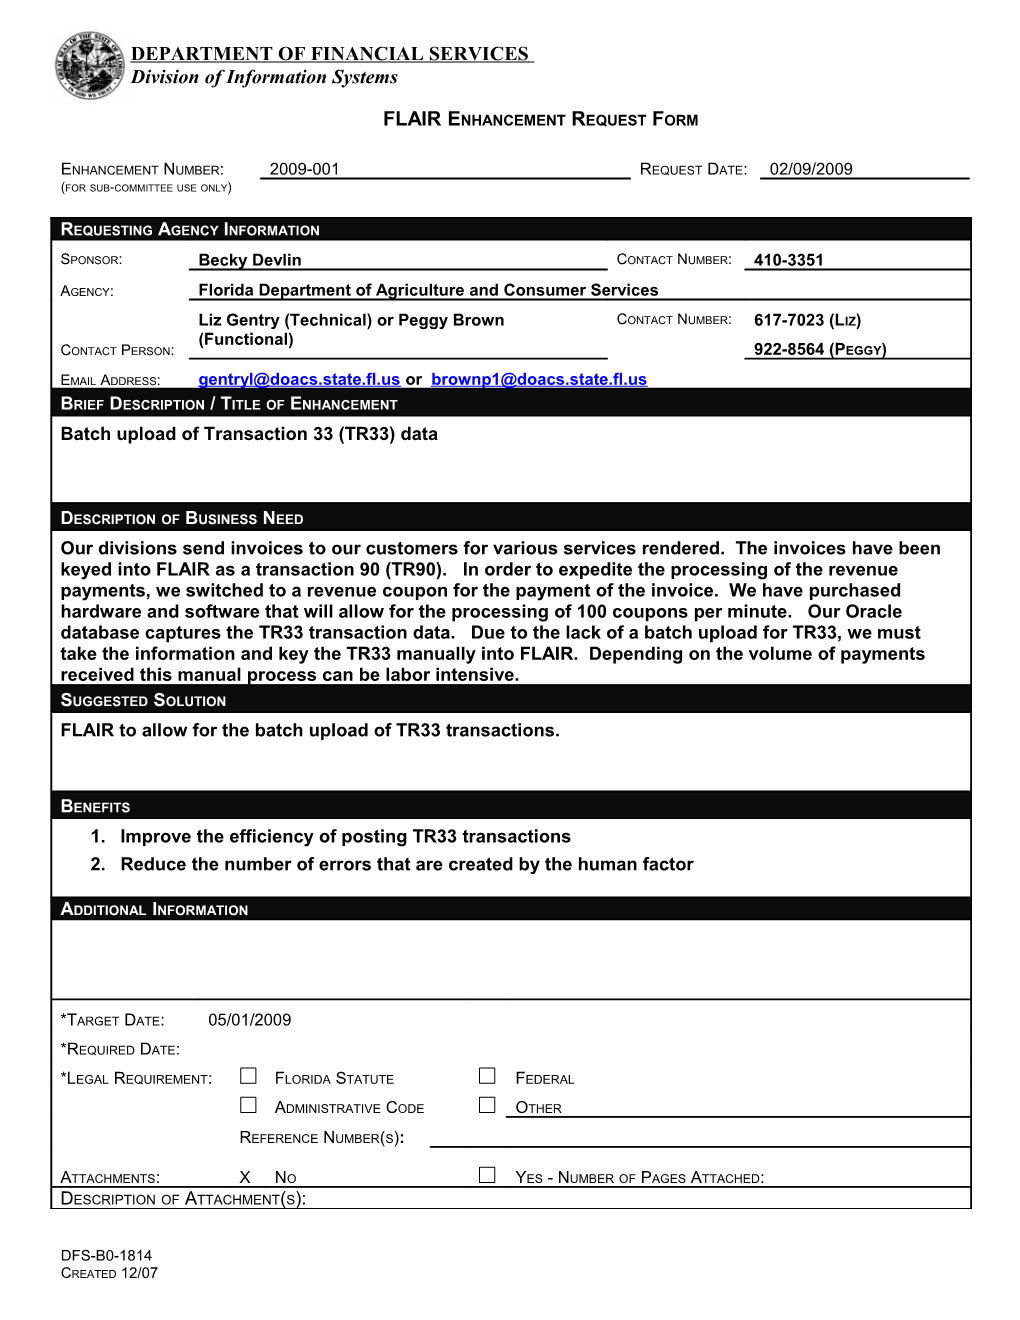 Flair Enhancement Request Form s1